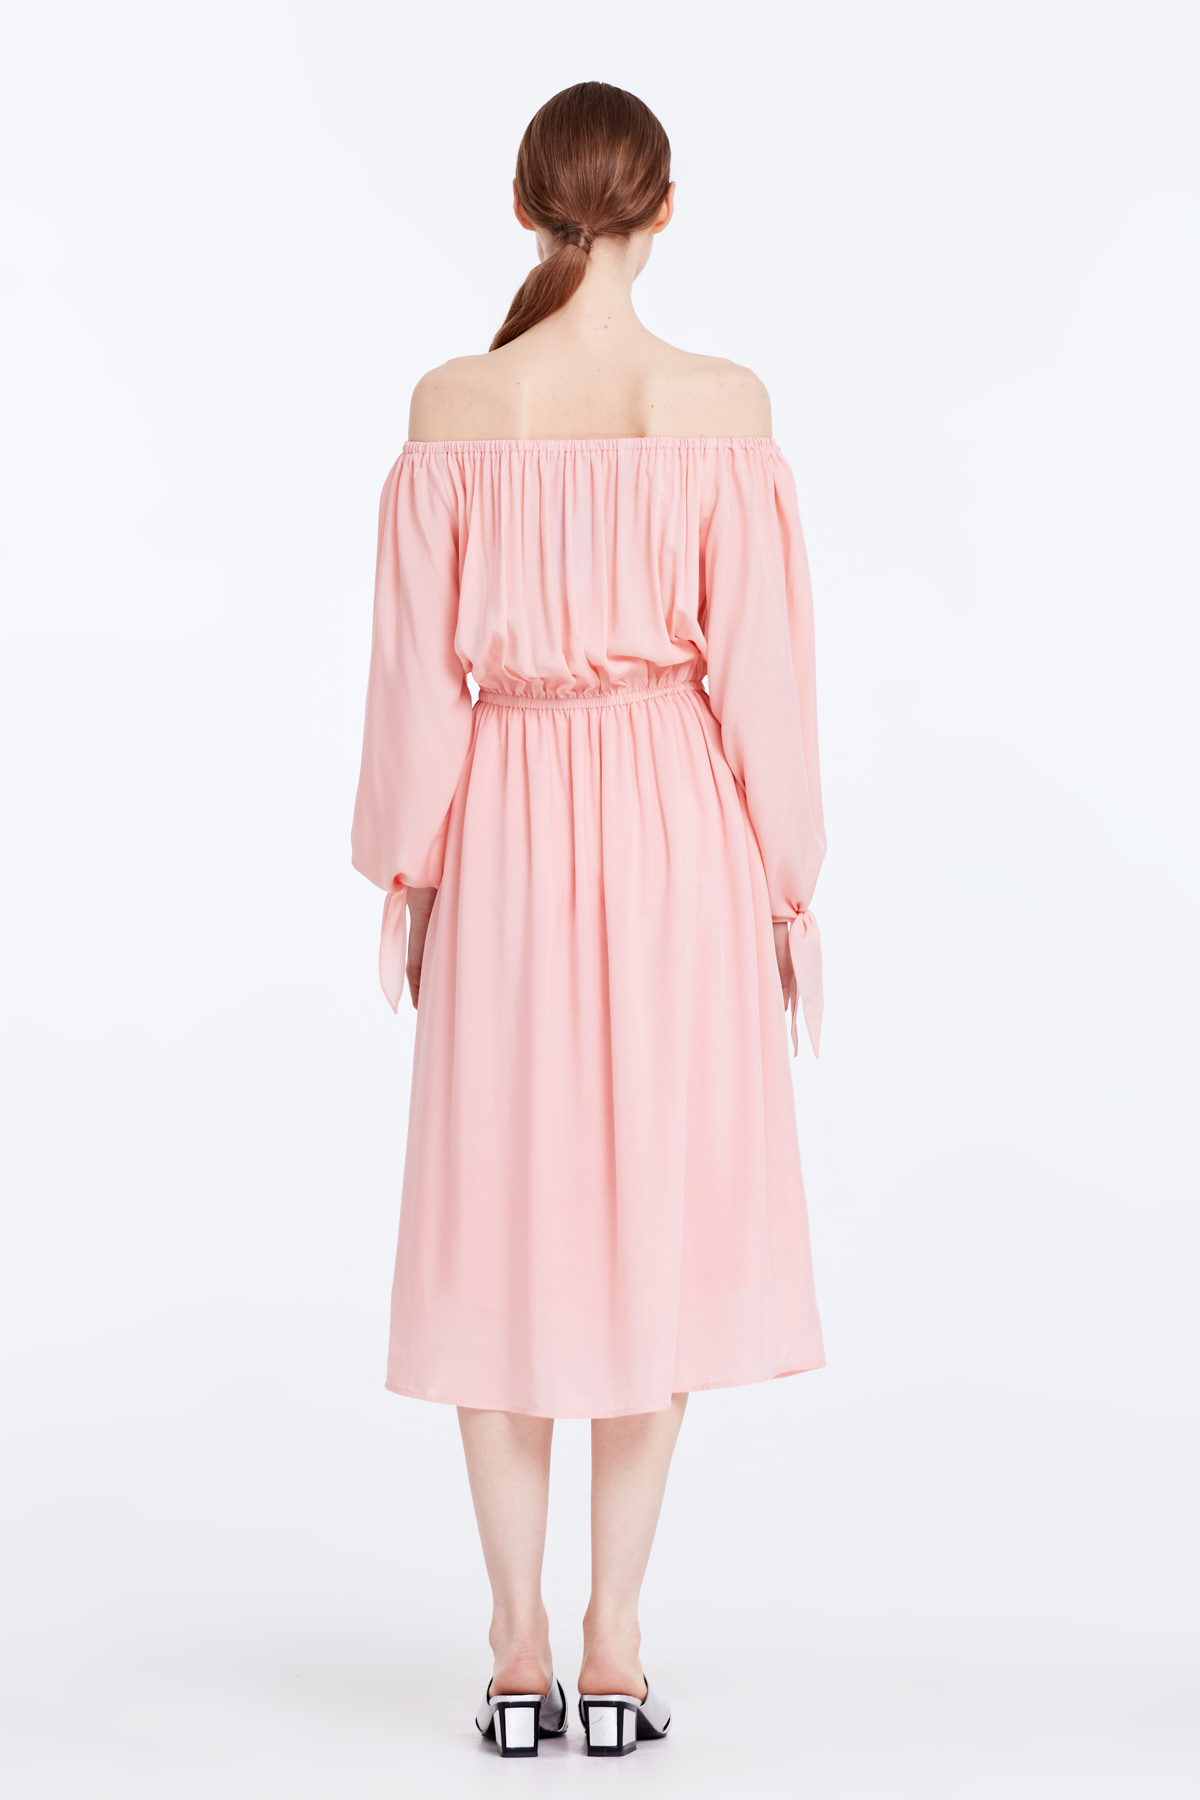 Off-shoulder powder pink dress, photo 7